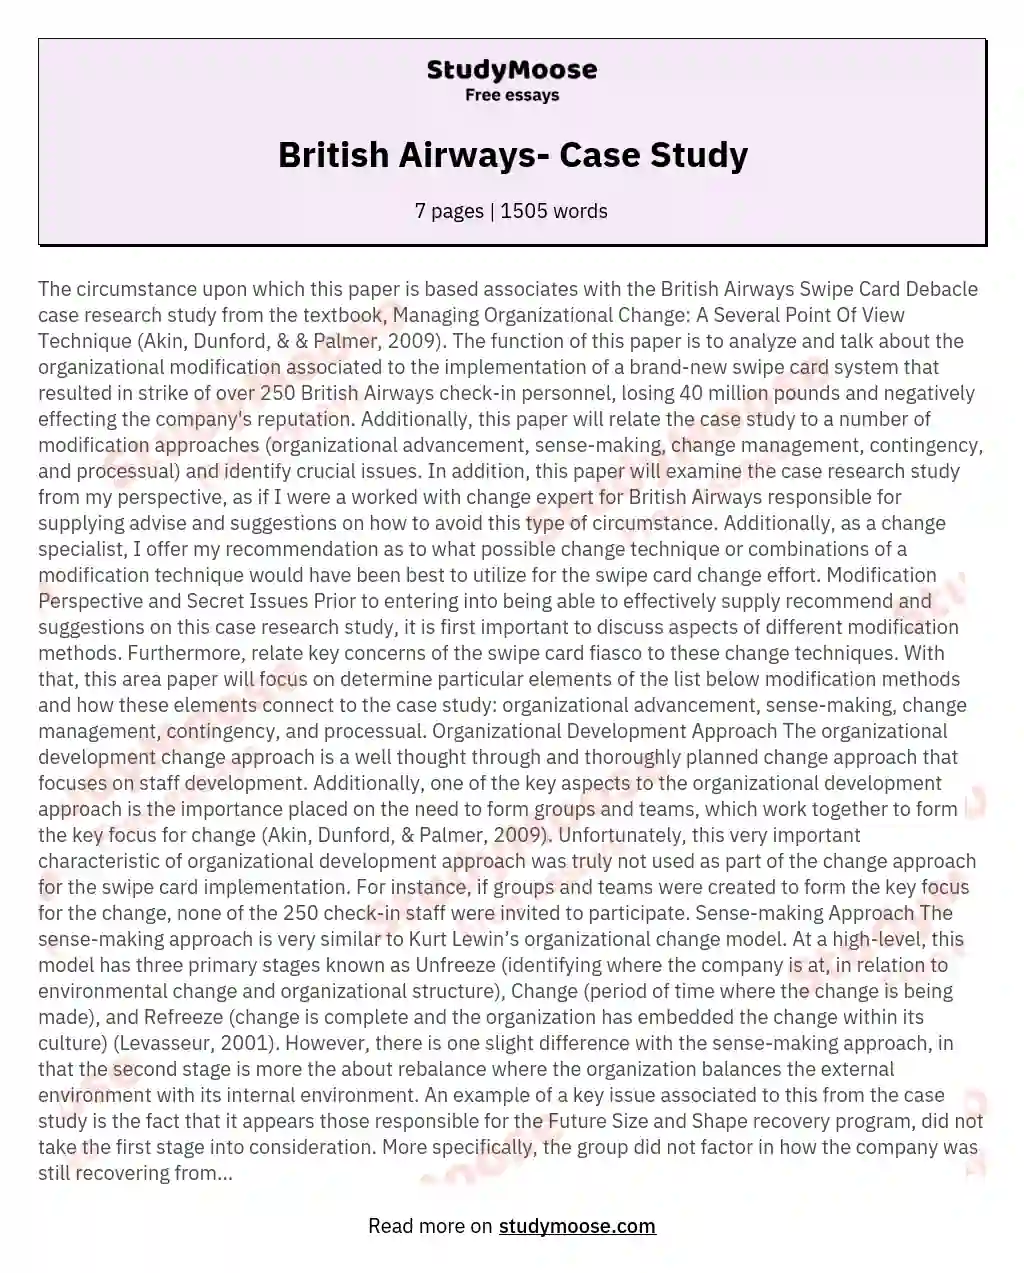 British Airways- Case Study essay